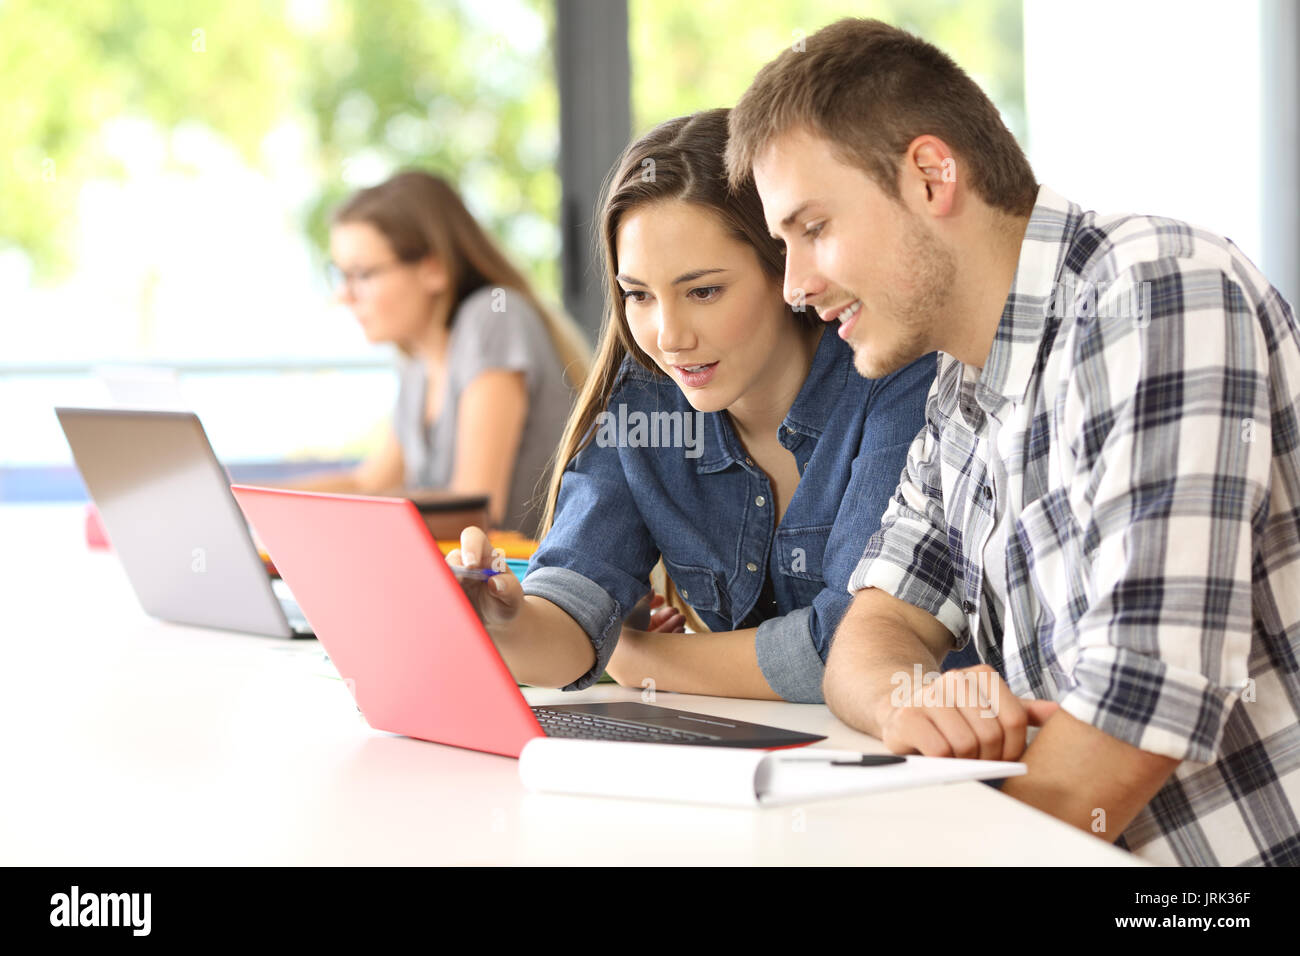 Deux étudiants concentrés sur ligne, assis dans un bureau dans une salle de classe avec un camarade dans l'arrière-plan Banque D'Images